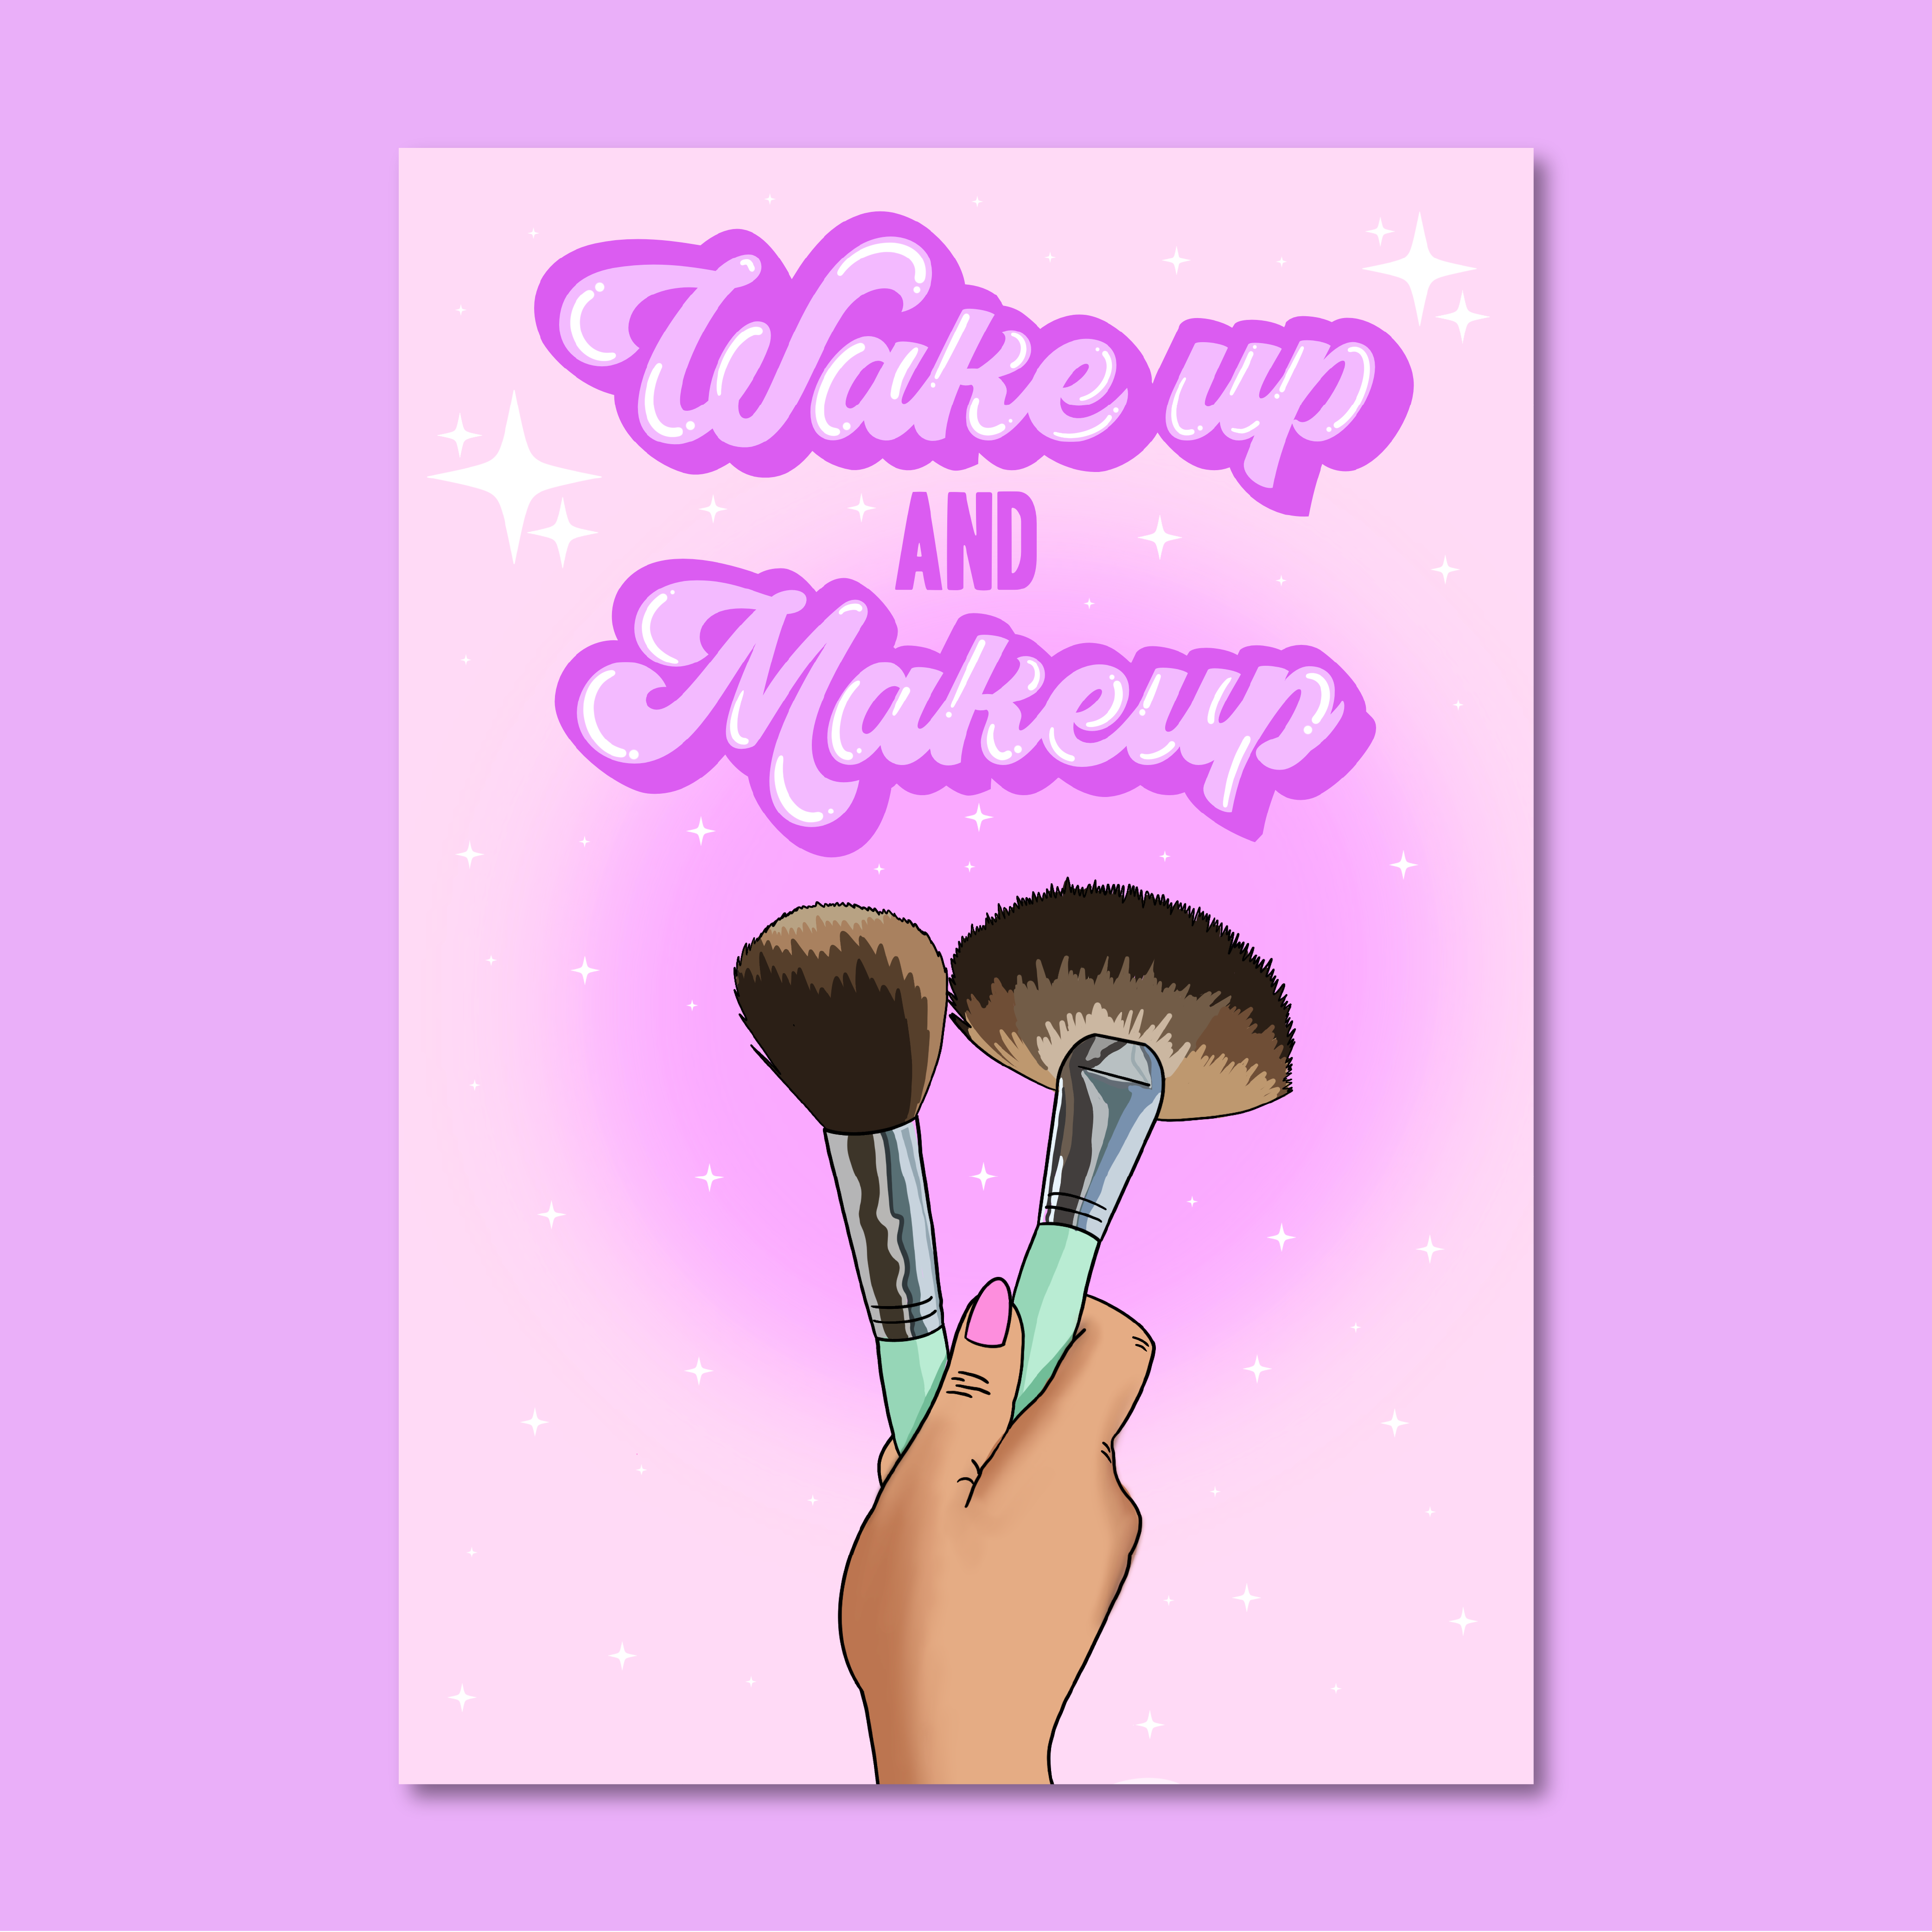 Wakeup & Makeup